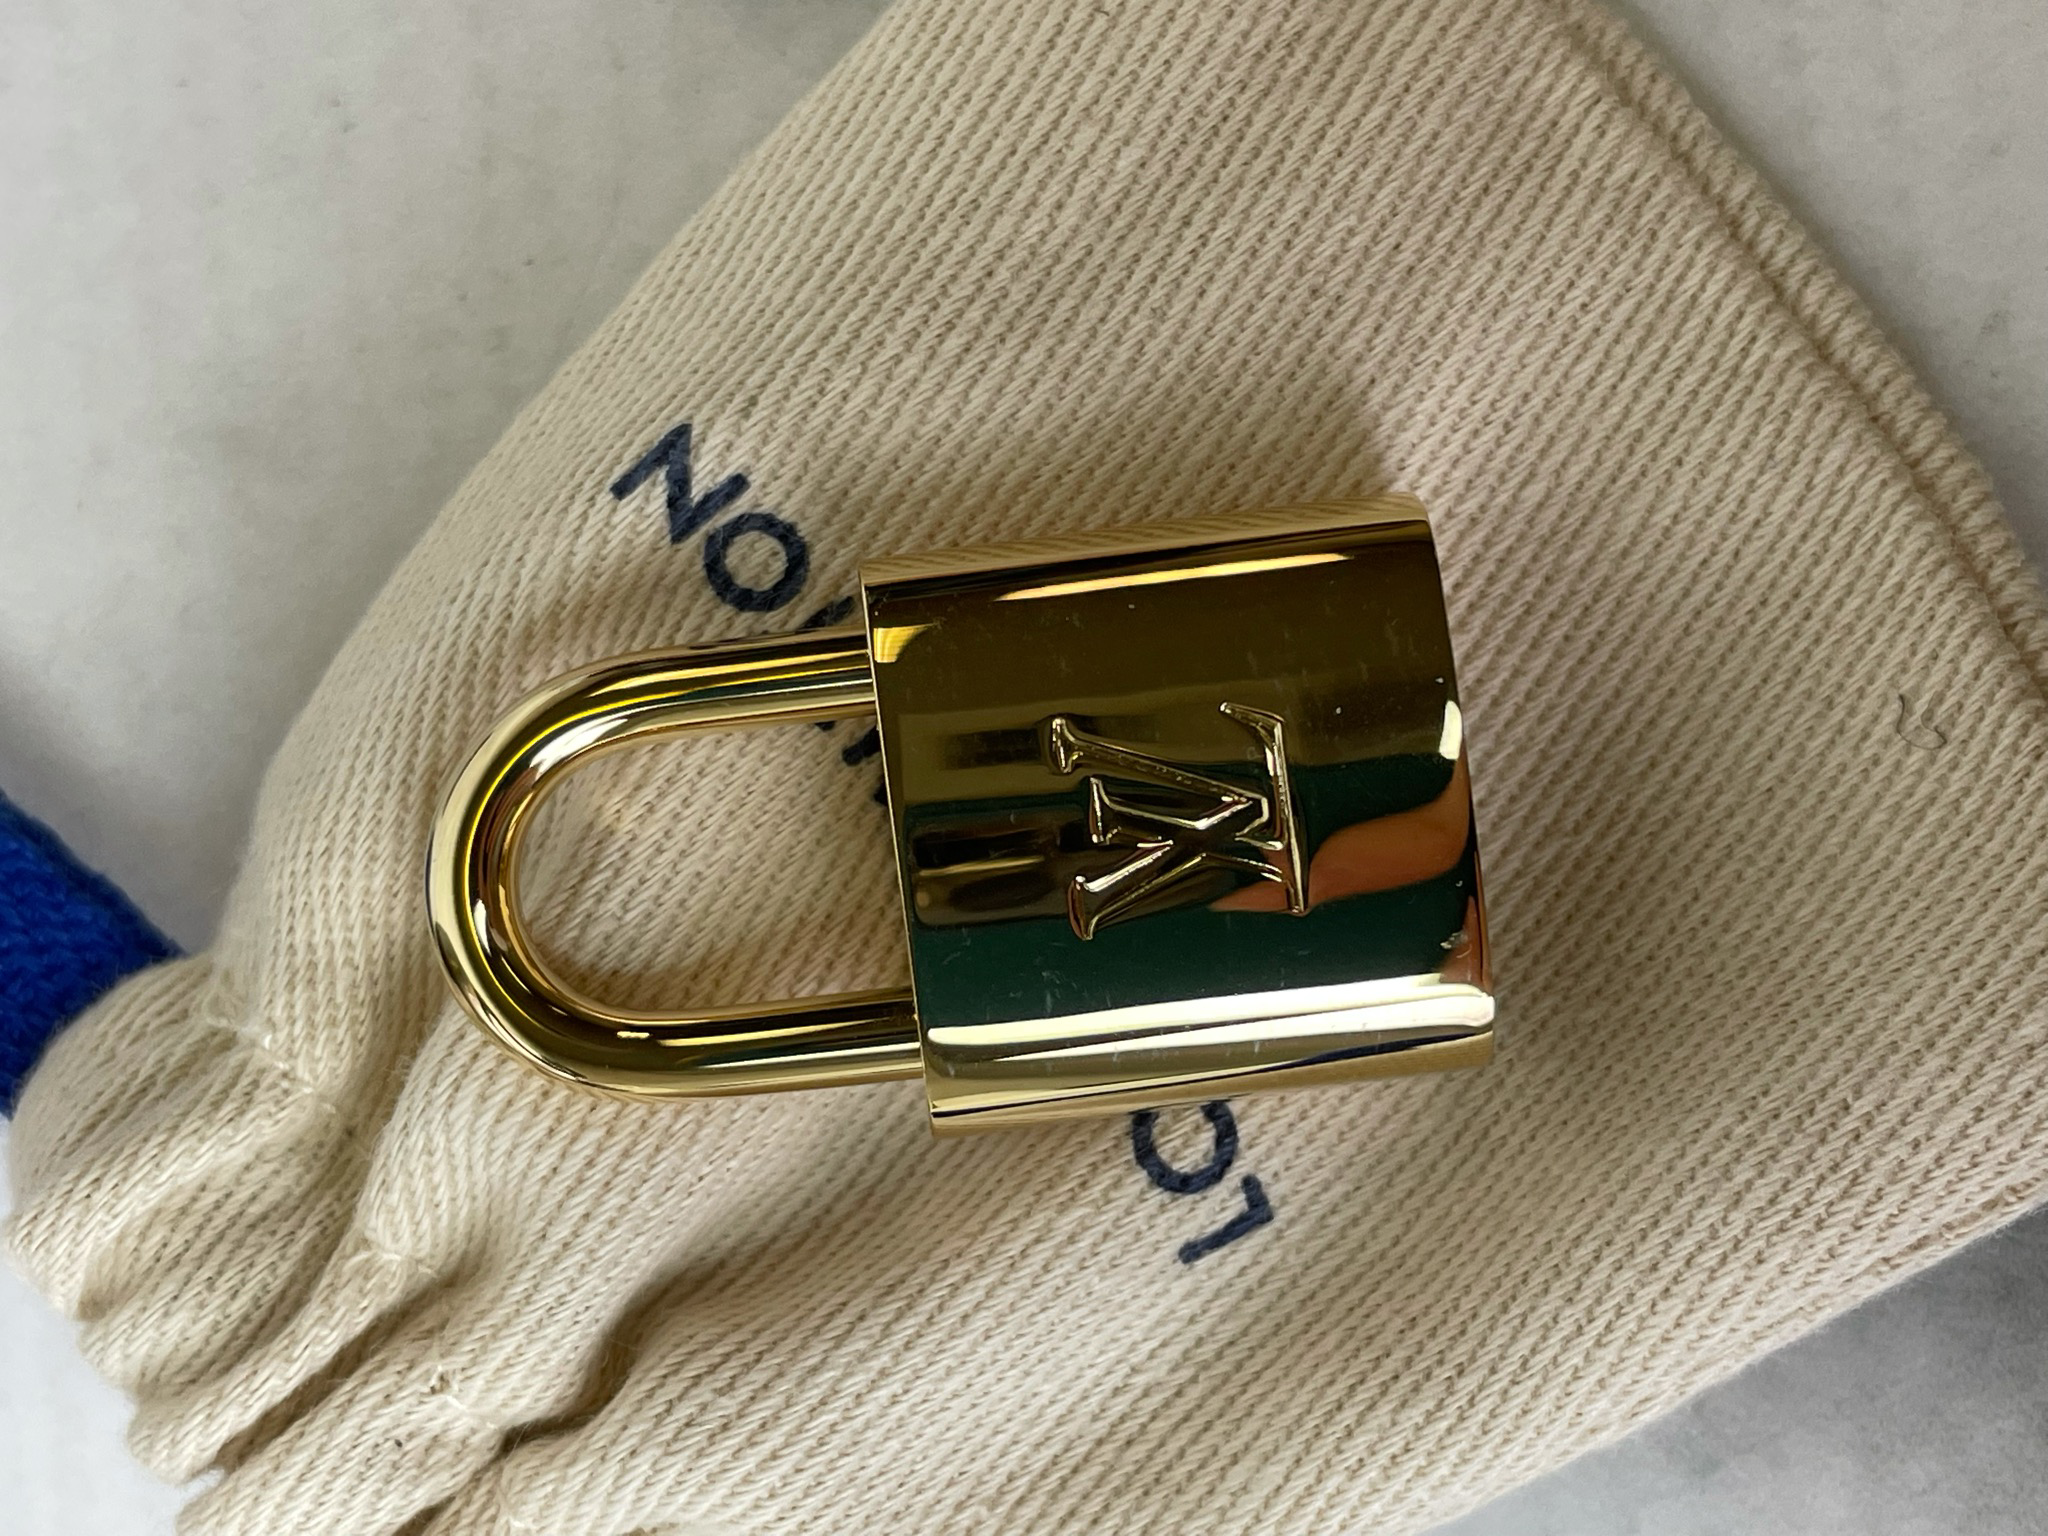 Louis Vuitton Alma Metallic Bag, Bragmybag